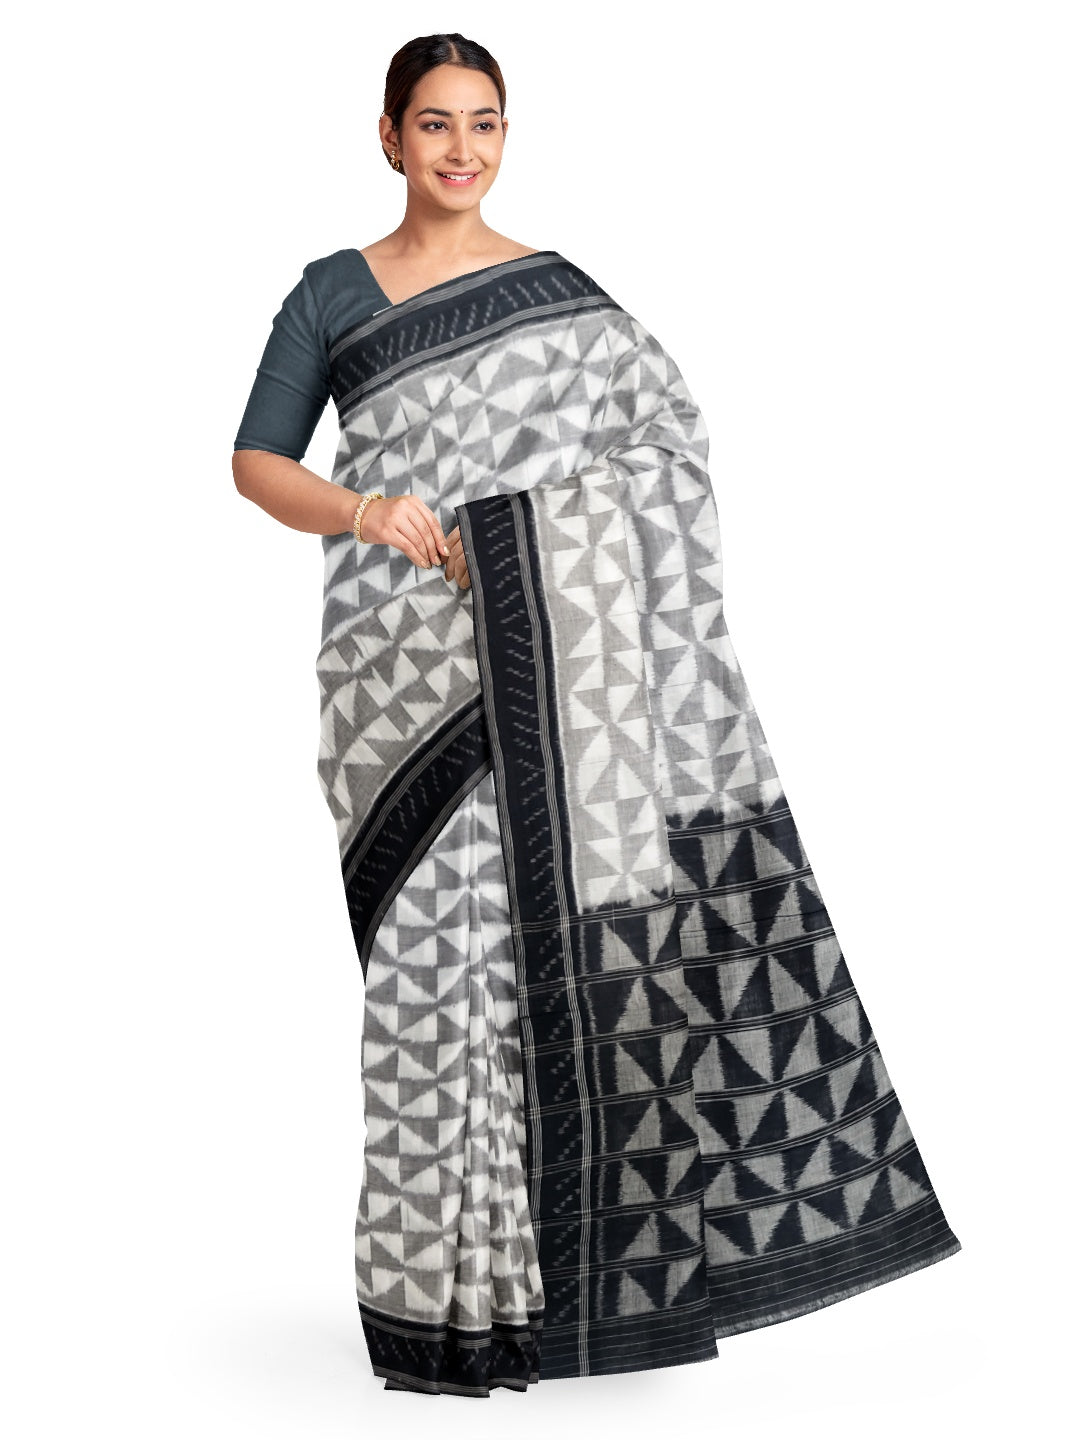 White and black Odisha ikat saree with geometric pattern woven motifs